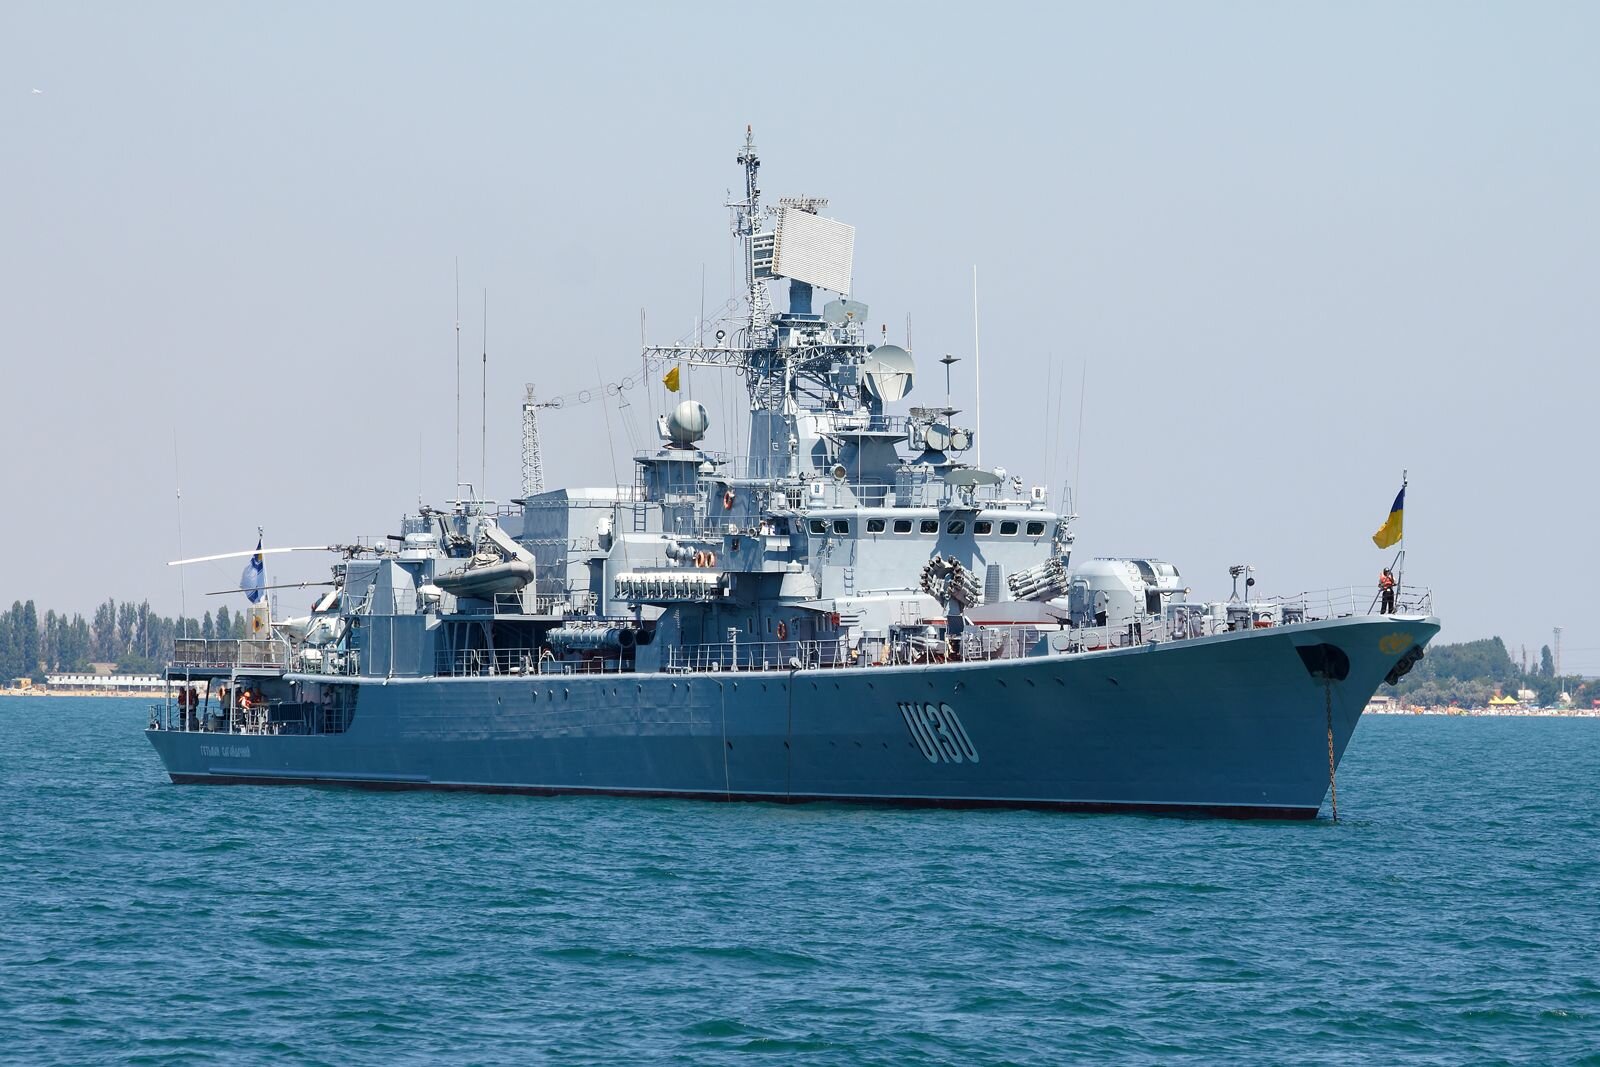 Флагман ВМС Украины "Гетман Сагайдачный" "взял на прицел" военные корабли России